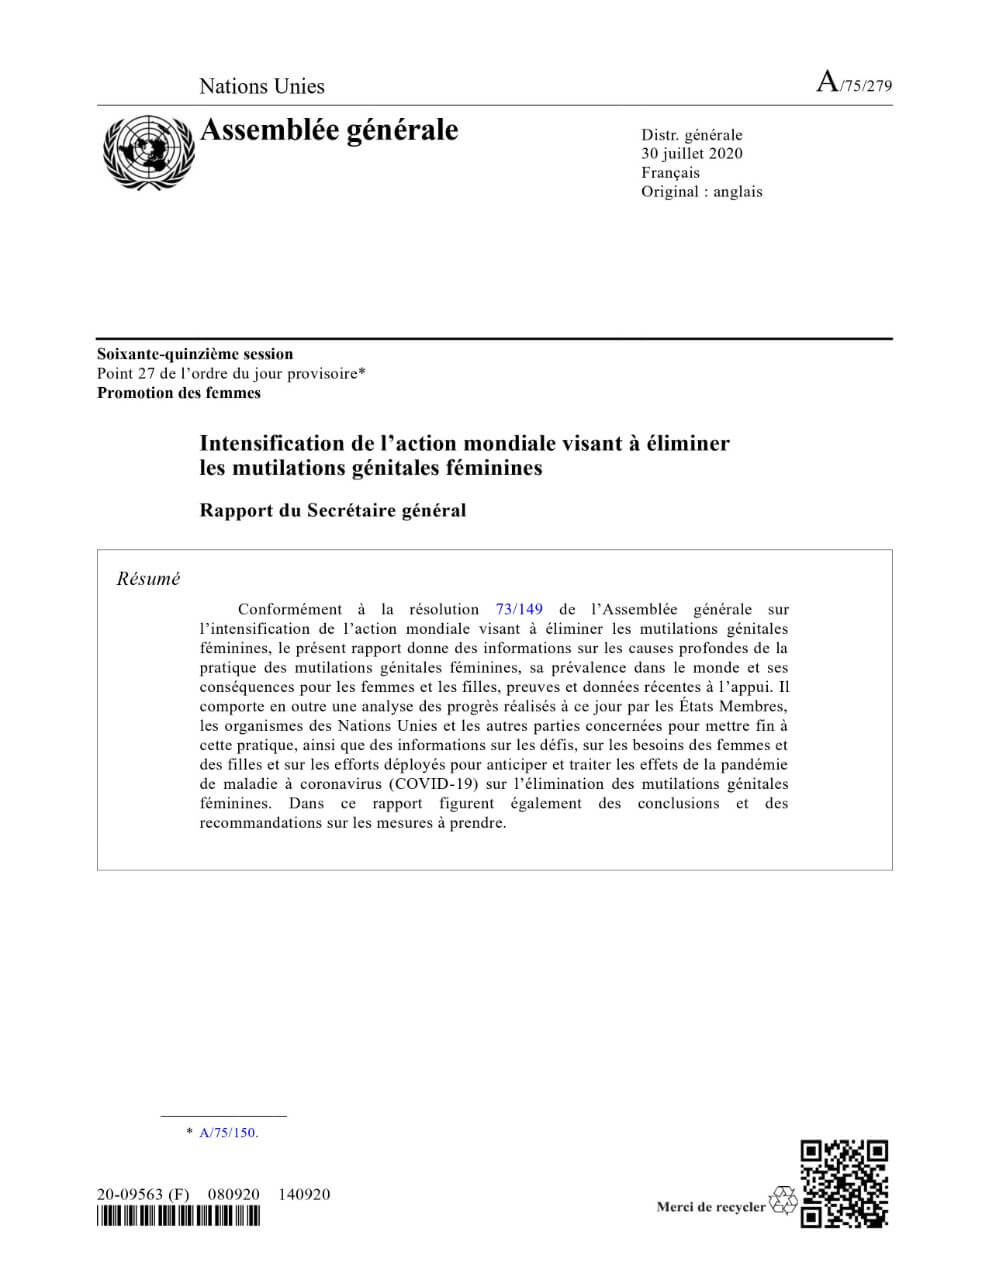 Intensification de l’action mondiale visant à éliminer les mutilations génitales féminines : Rapport du Secrétaire général (2020)